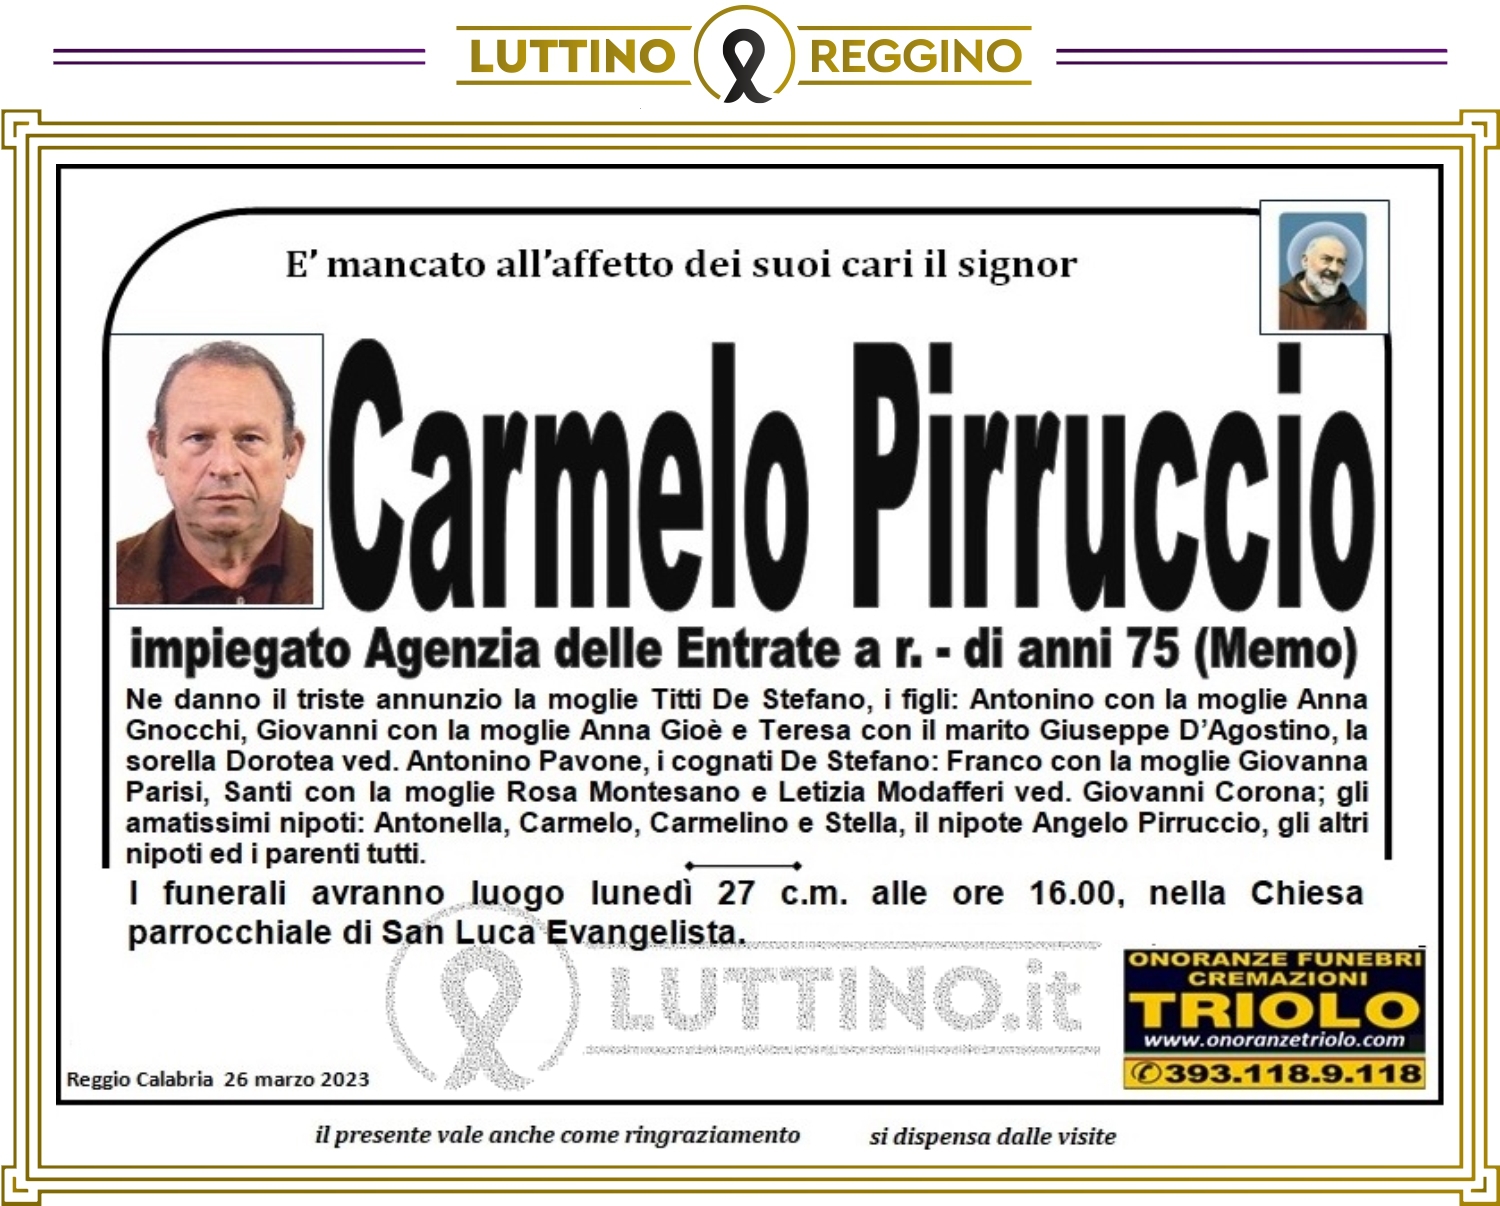 Carmelo Pirruccio